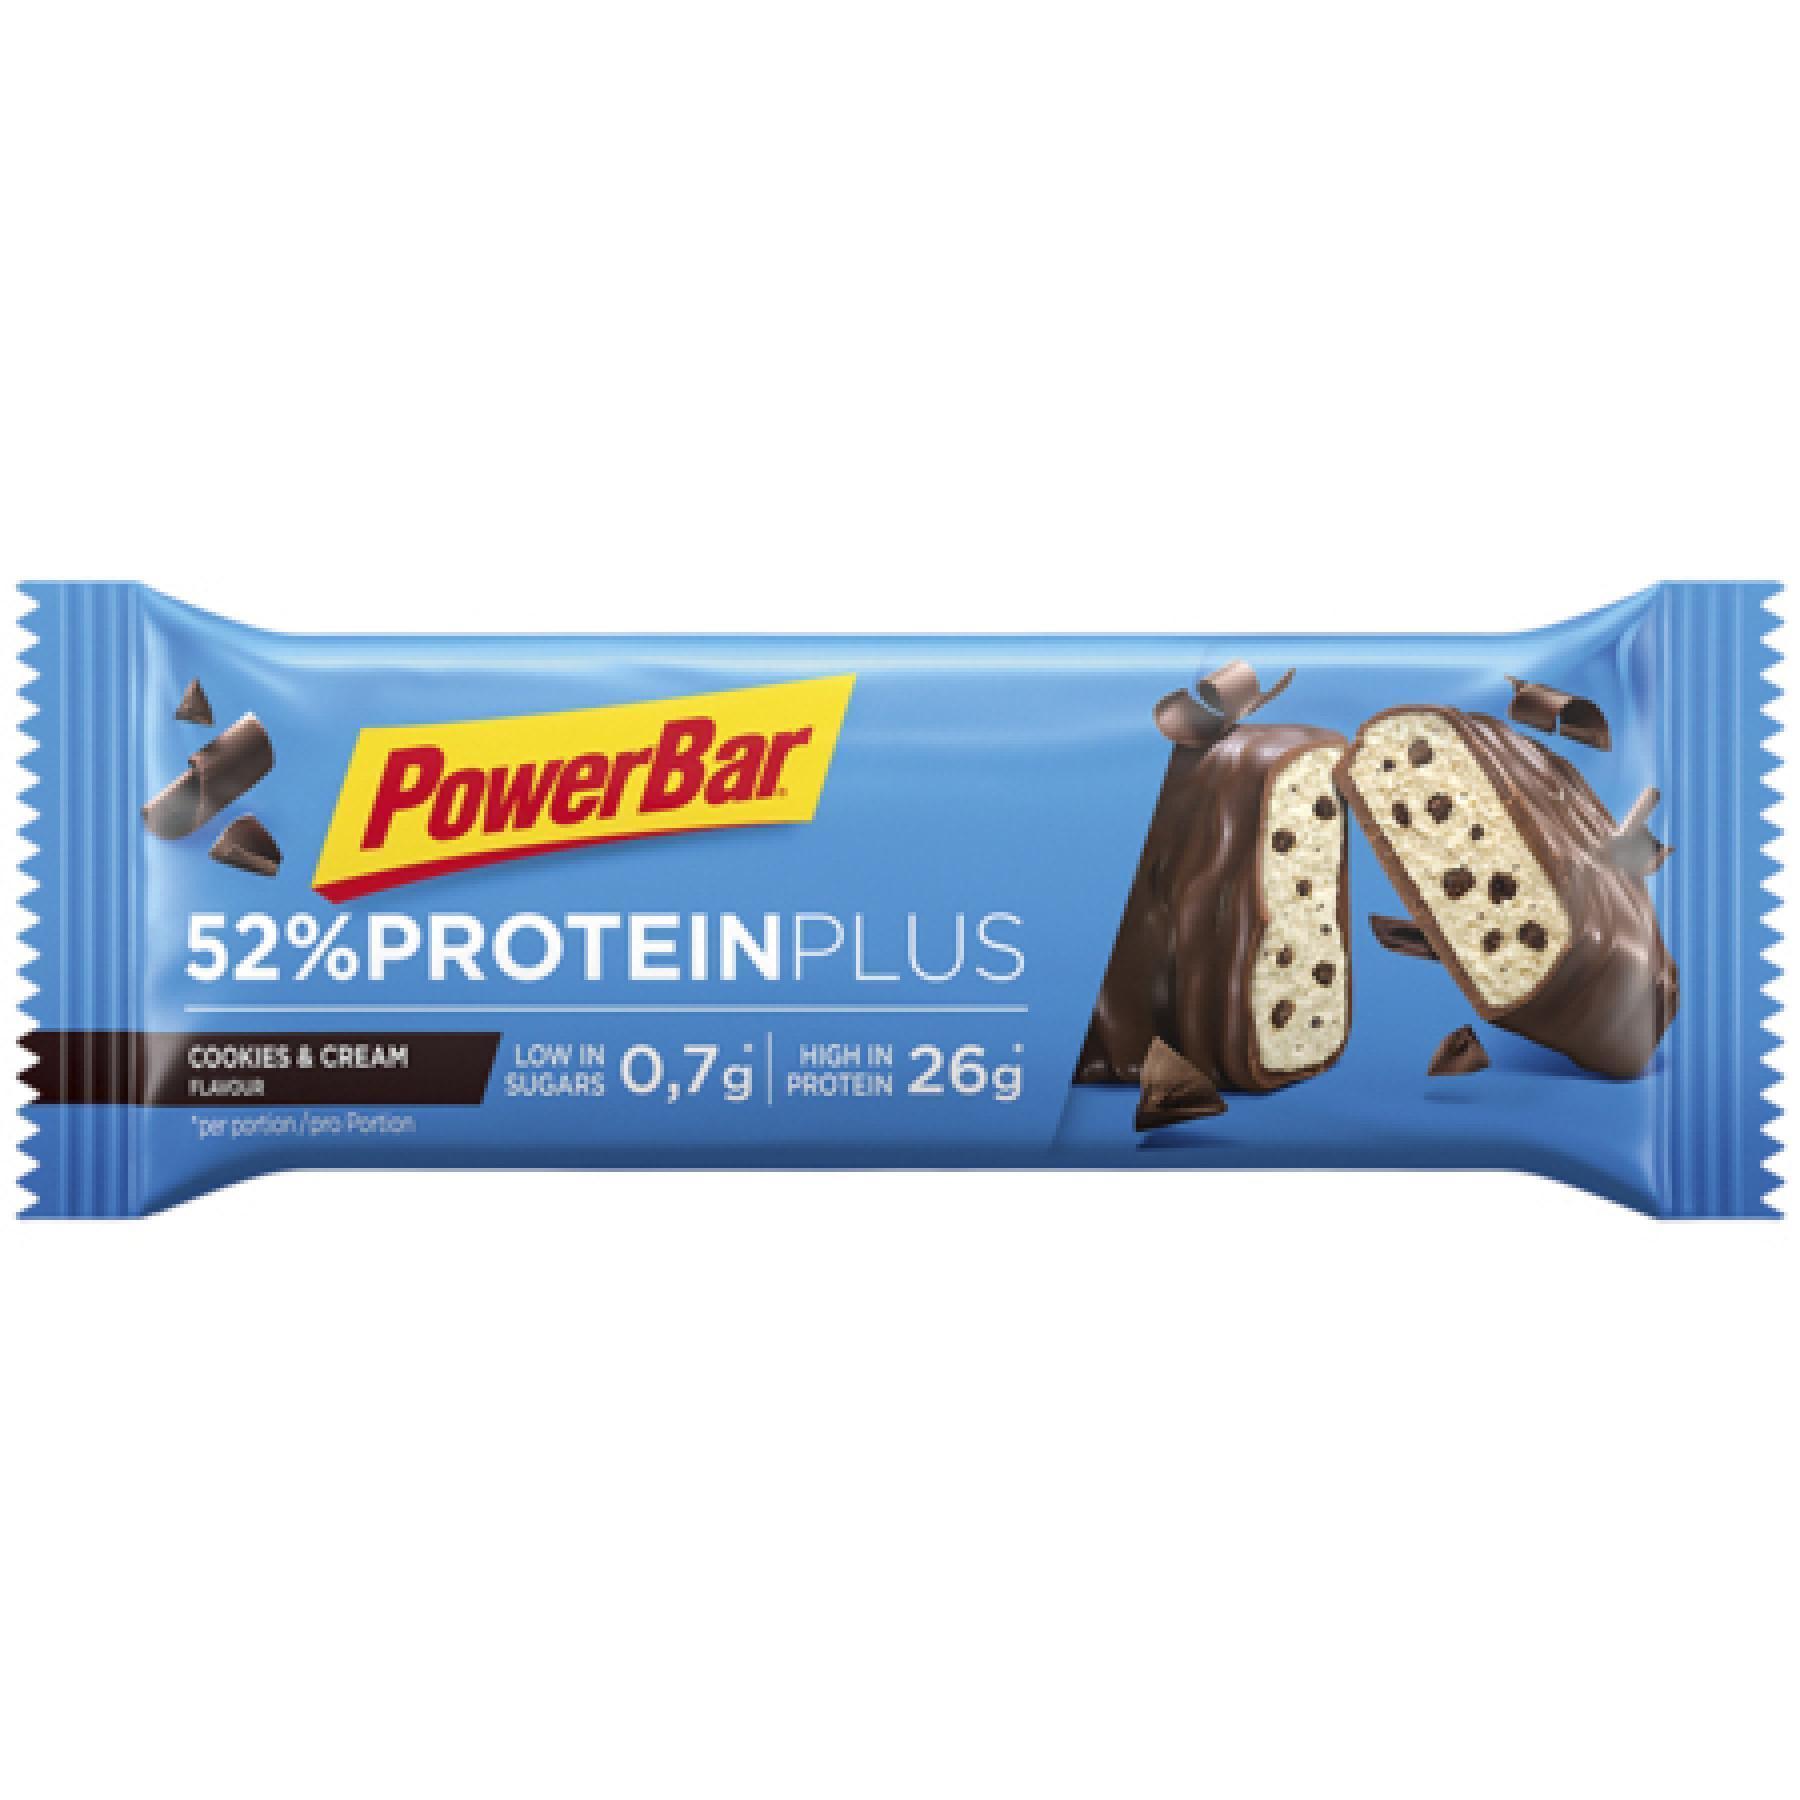 Opakowanie 20 batonów PowerBar 52% ProteinPlus Low Sugar Cookies & Cream